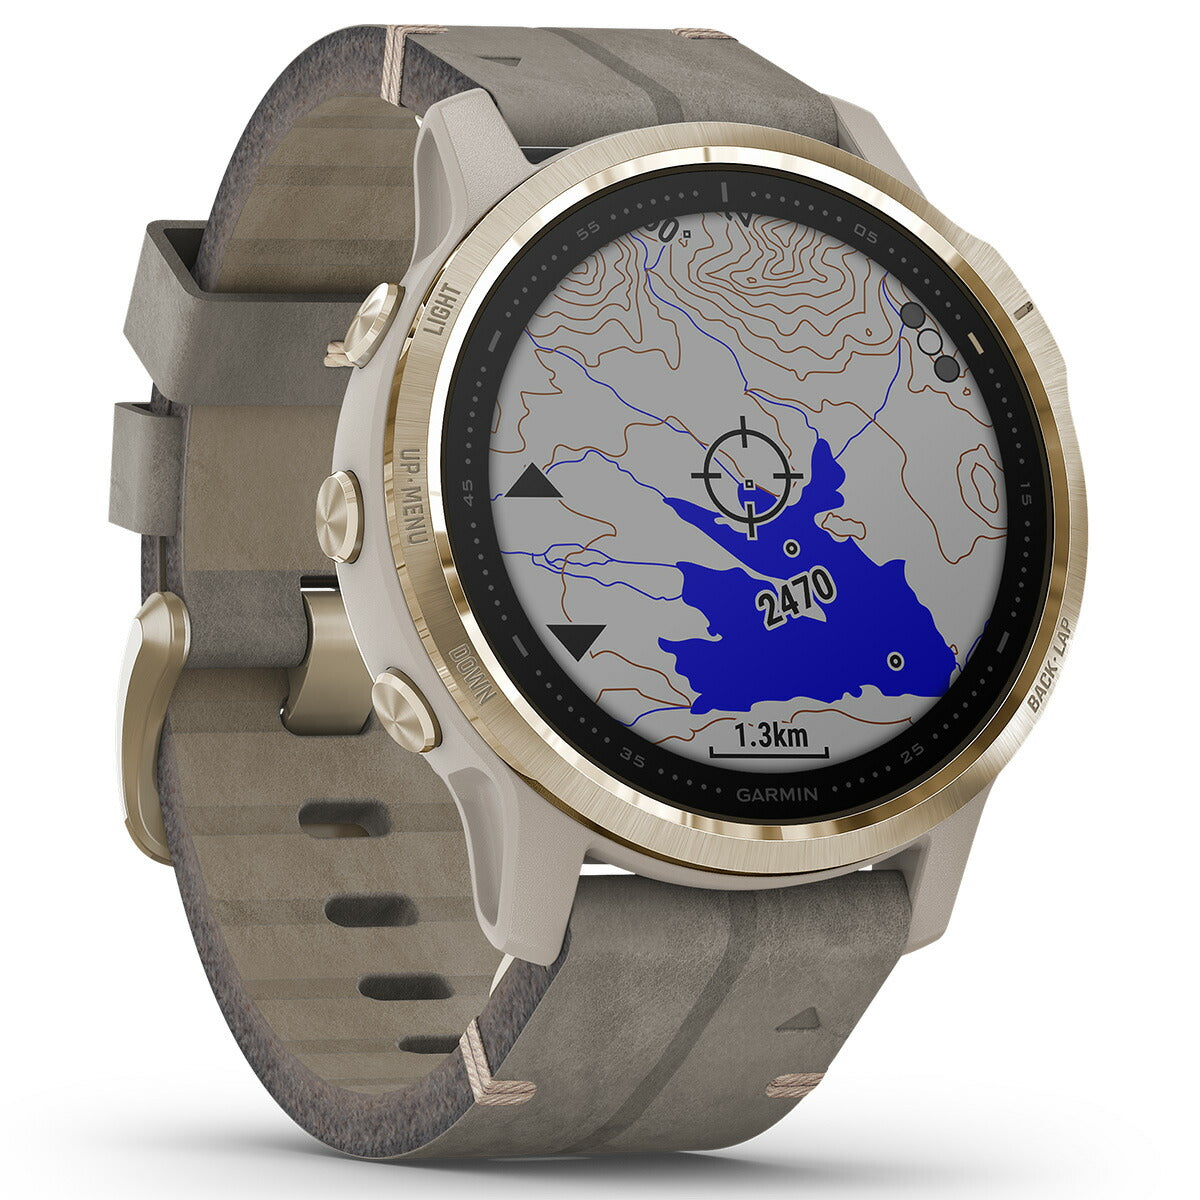 【特価販売！】ガーミン GARMIN fenix 6S Sapphire Tundra Light Gold Leather band フェニックス 6S マルチスポーツ GPS スマートウォッチ ウェアラブル 腕時計 010-02159-8M